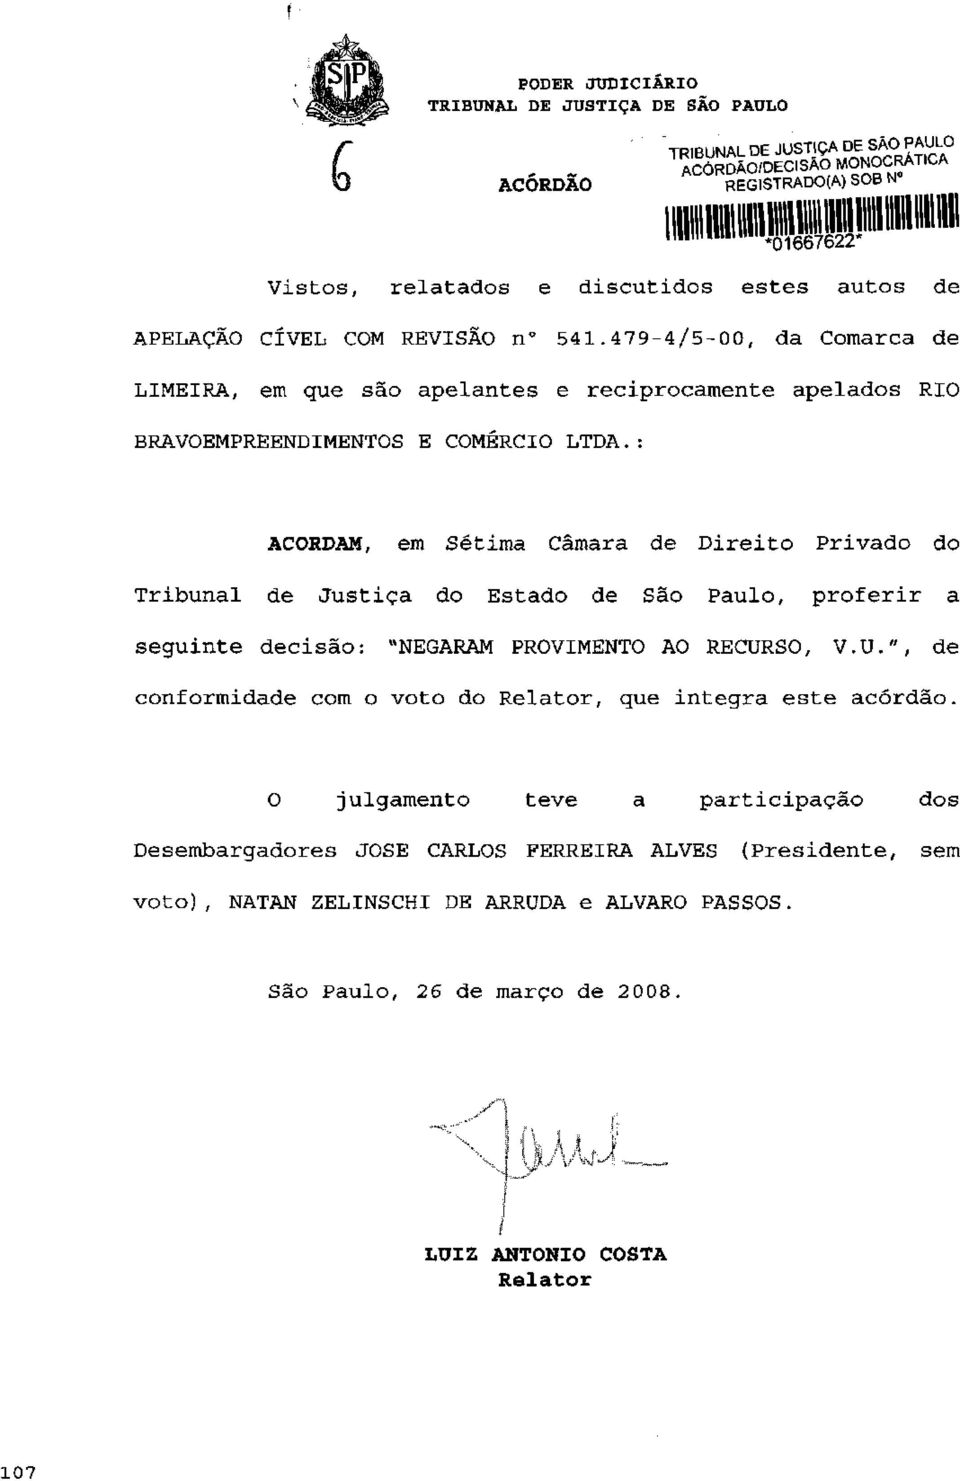 : ACORDAM, em Sétima Câmara de Direito Privado do Tribunal de Justiça do Estado de São Paulo, proferir a seguinte decisão: "NEGARAM PROVIMENTO AO RECUR